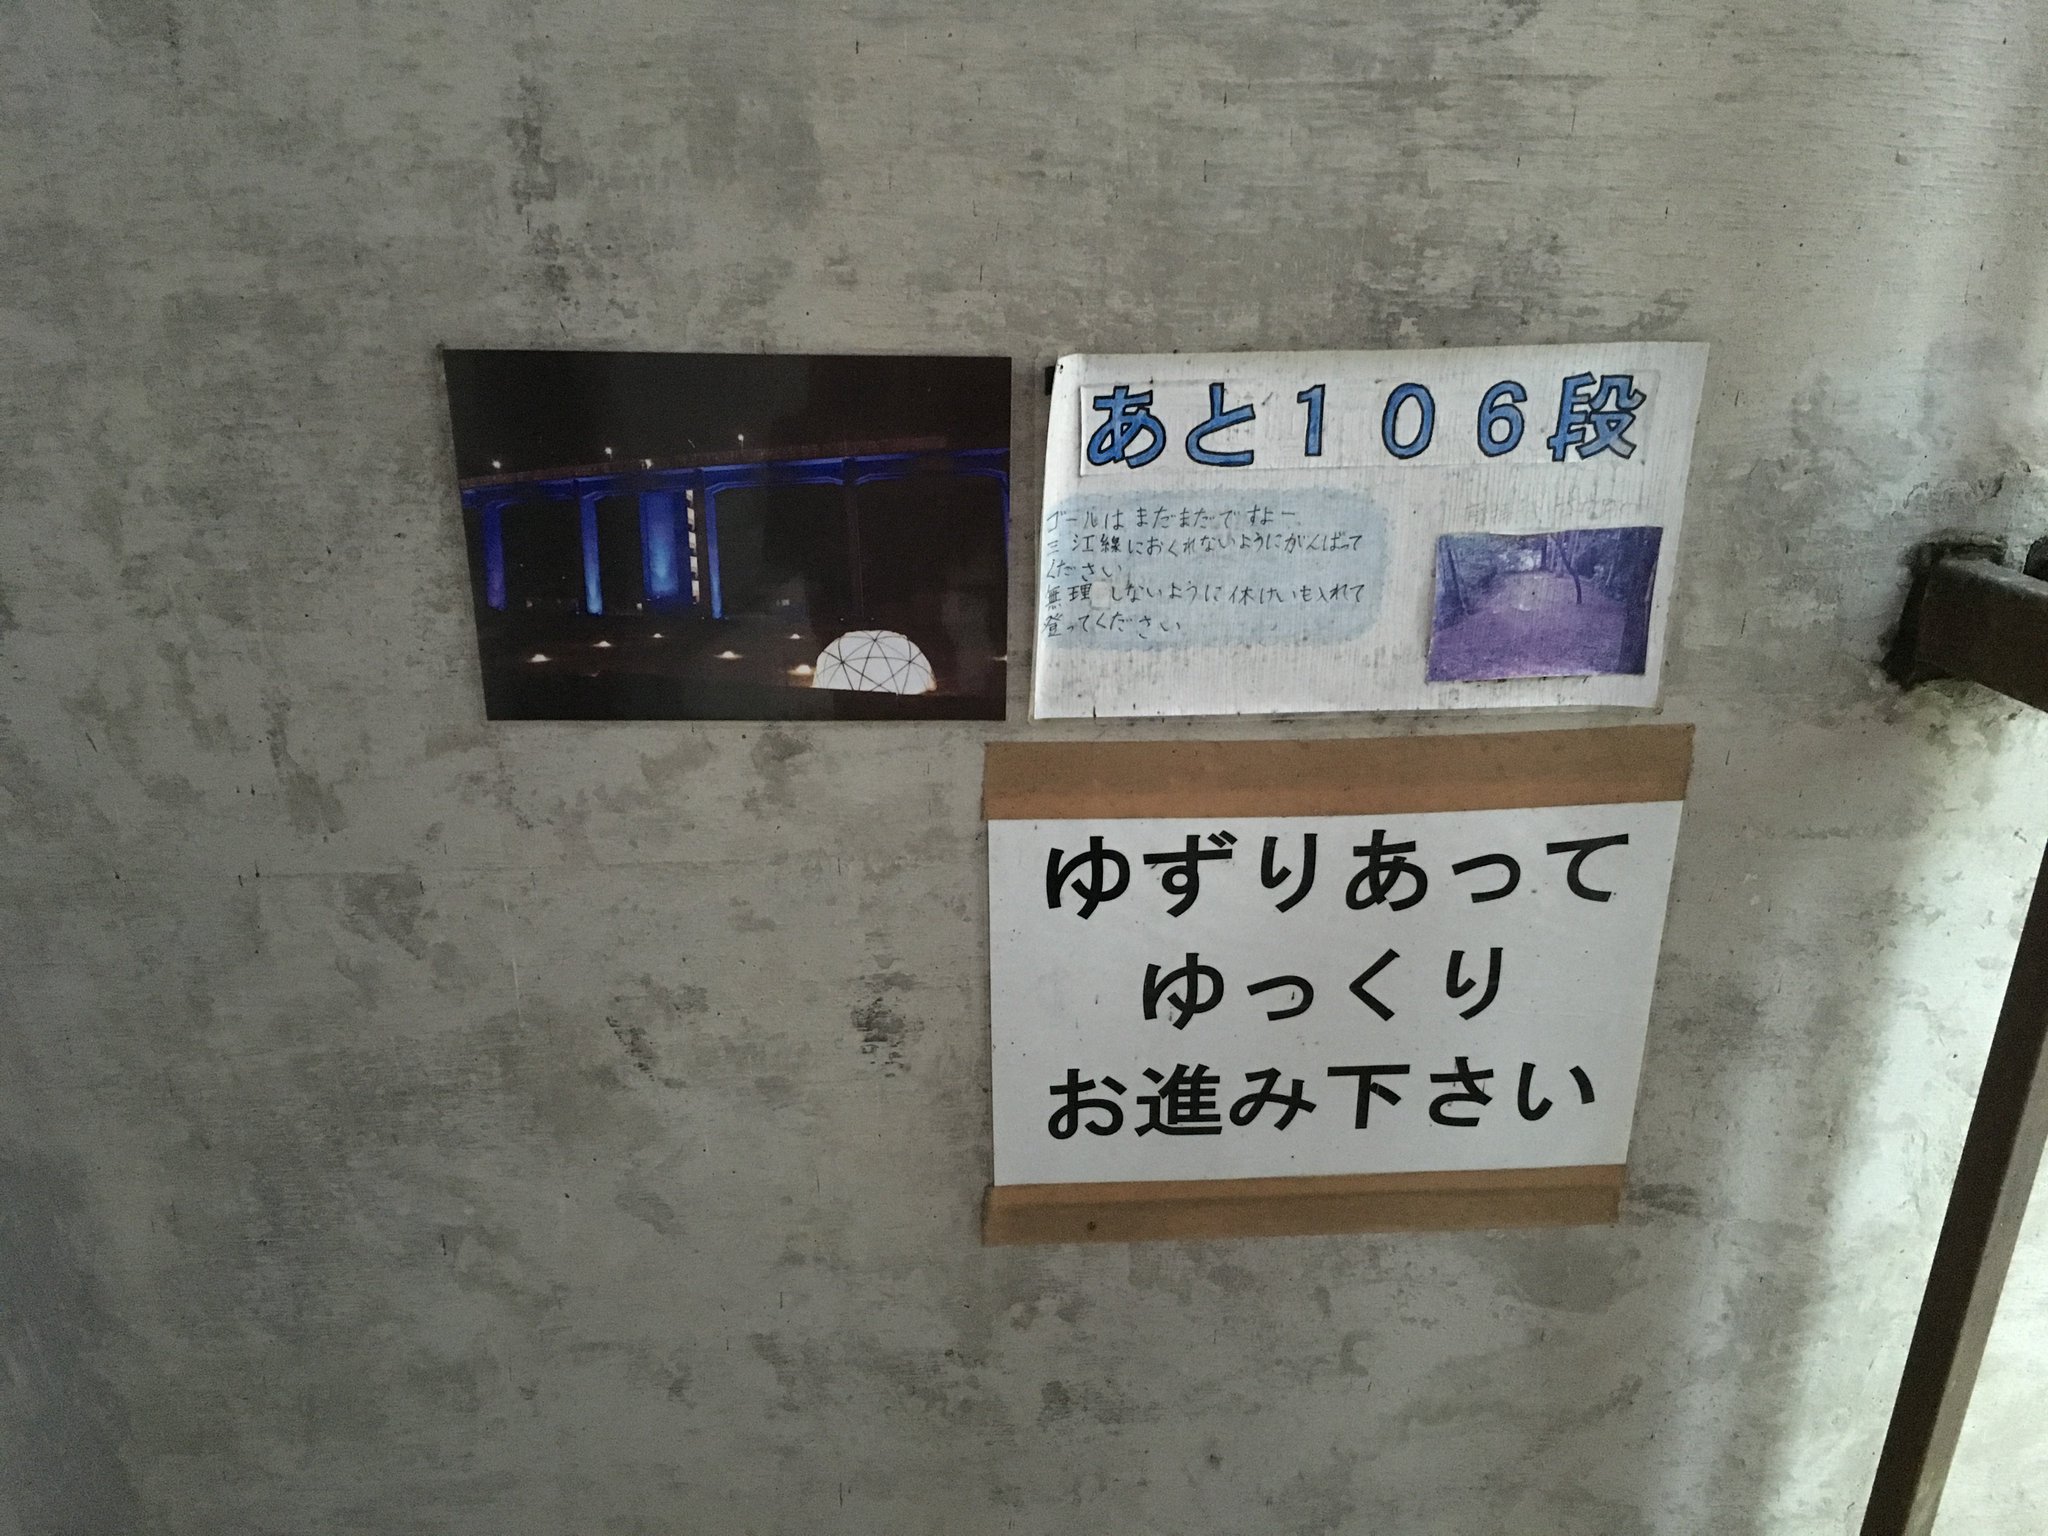 ミネラルウォーター 伊藤善久 on Twitter: "JR西日本 三江線 宇都井駅 訪れたのは12月31日。 とにかく寒かった。 ホームも